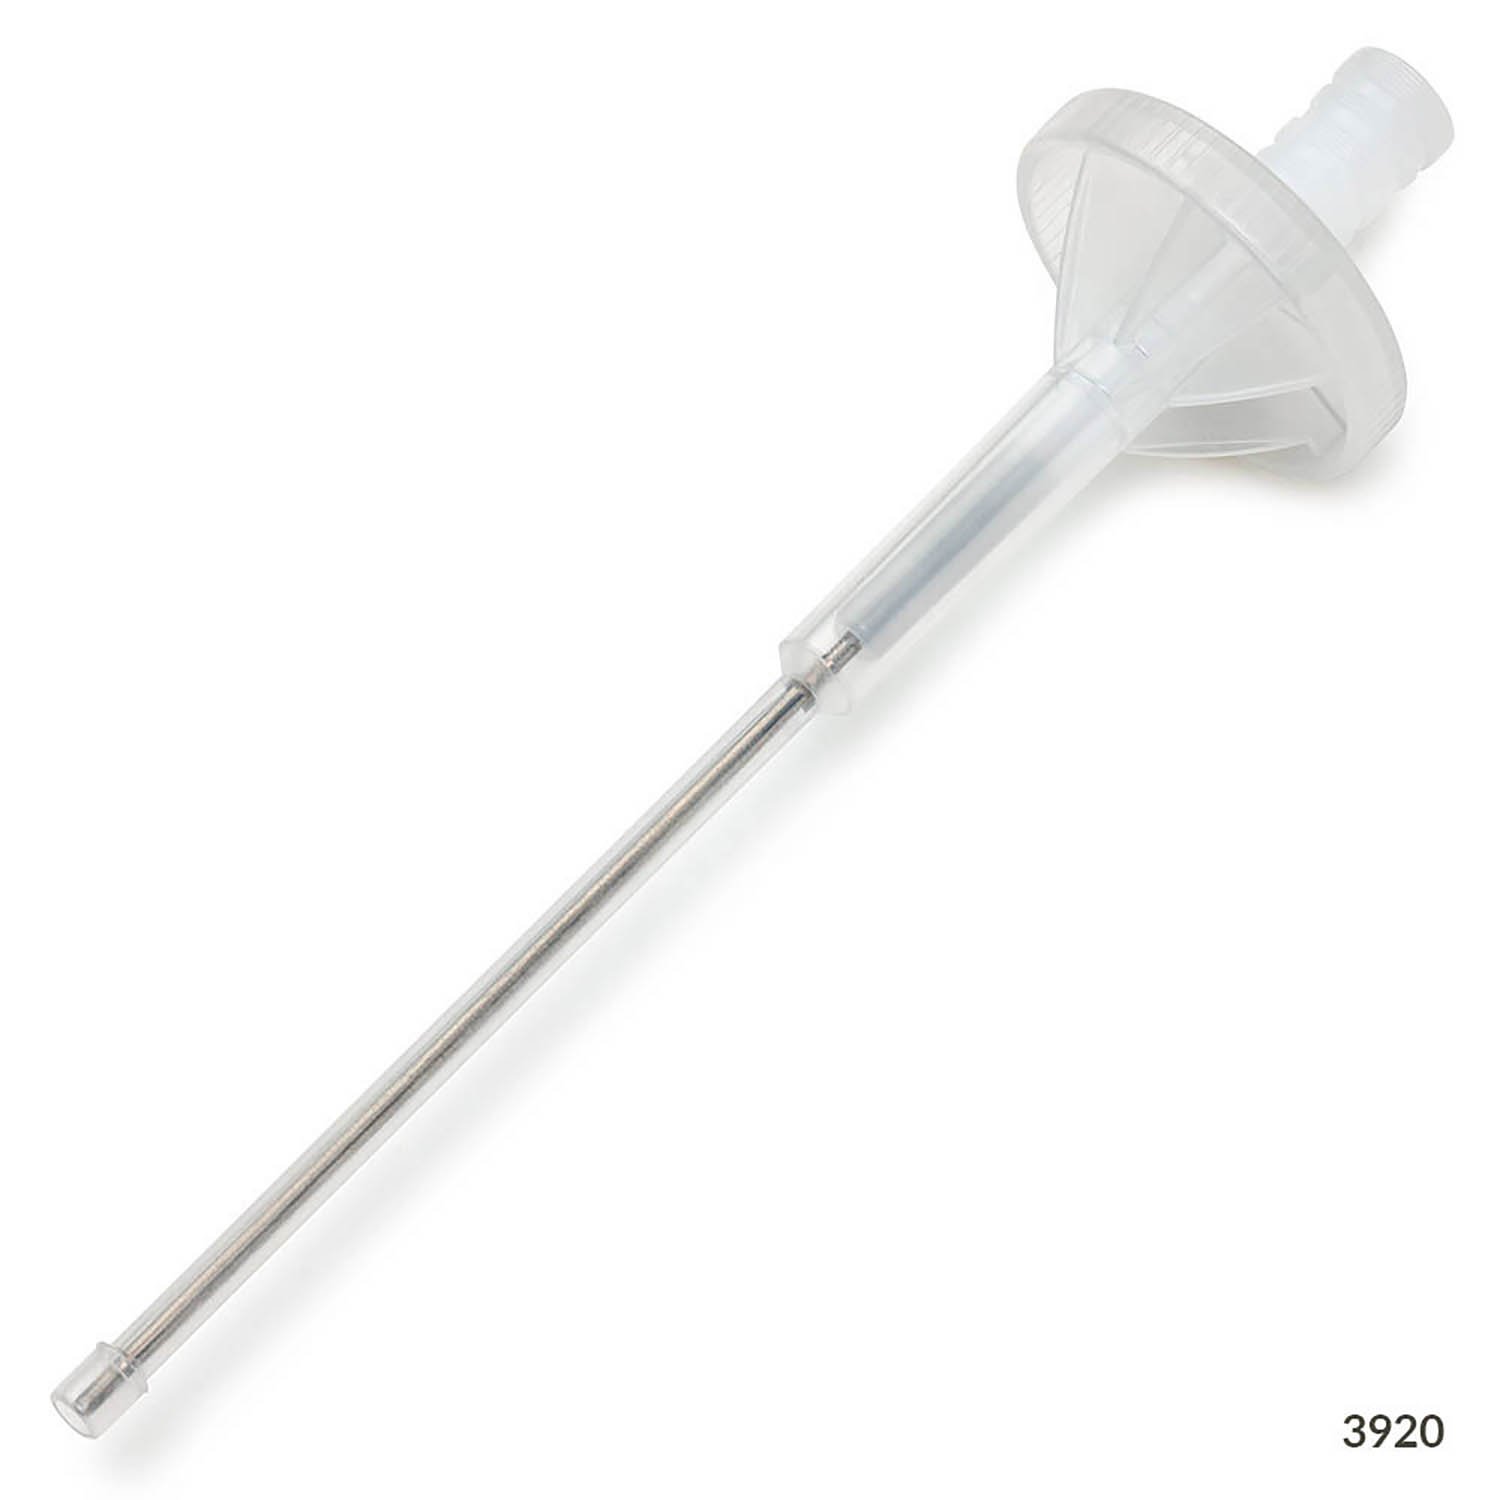 RV-Pette PRO Dispenser Syringe Tip for Repeat Volume Pipettors - Non-Sterile, 0.05mL, Box of 100